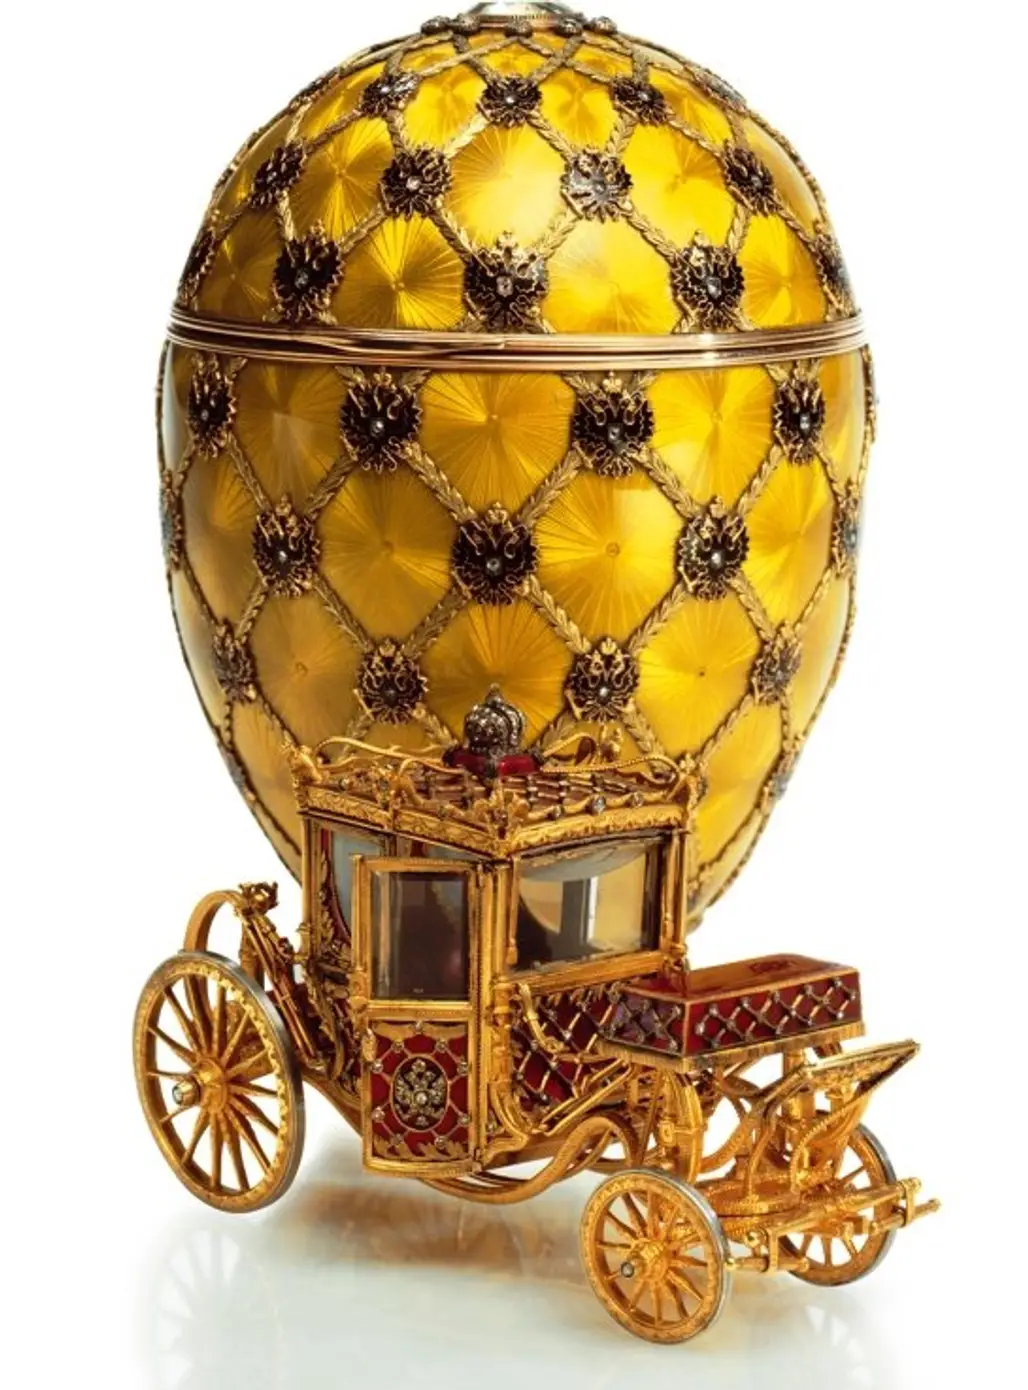 The Coronation Egg